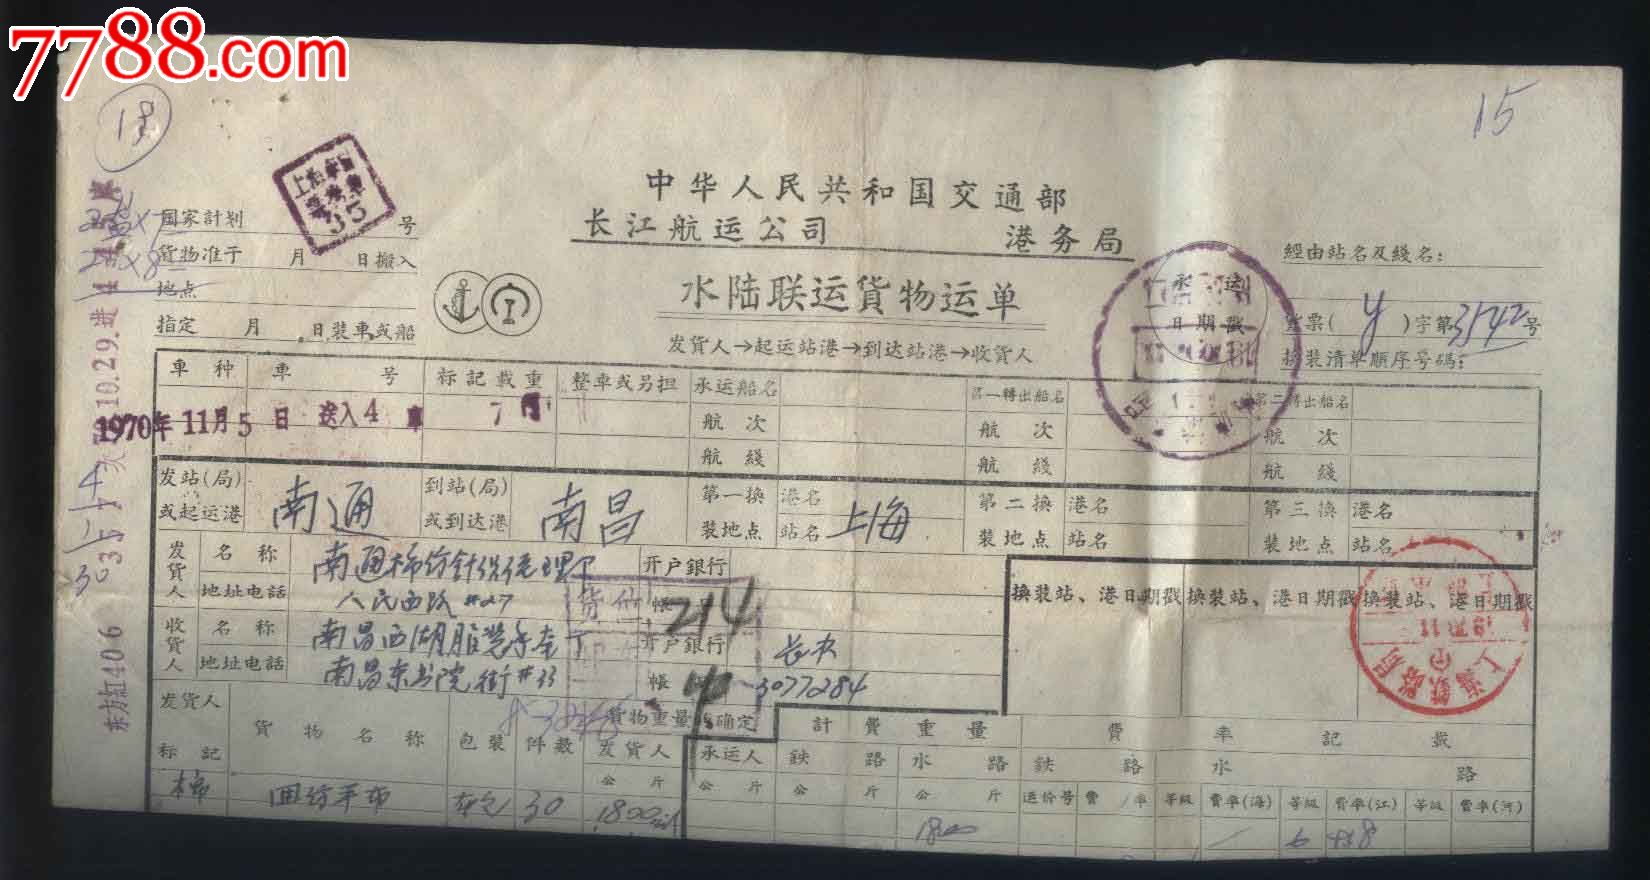 交通部长江航运公司水陆联运货物运单(水路,铁路)